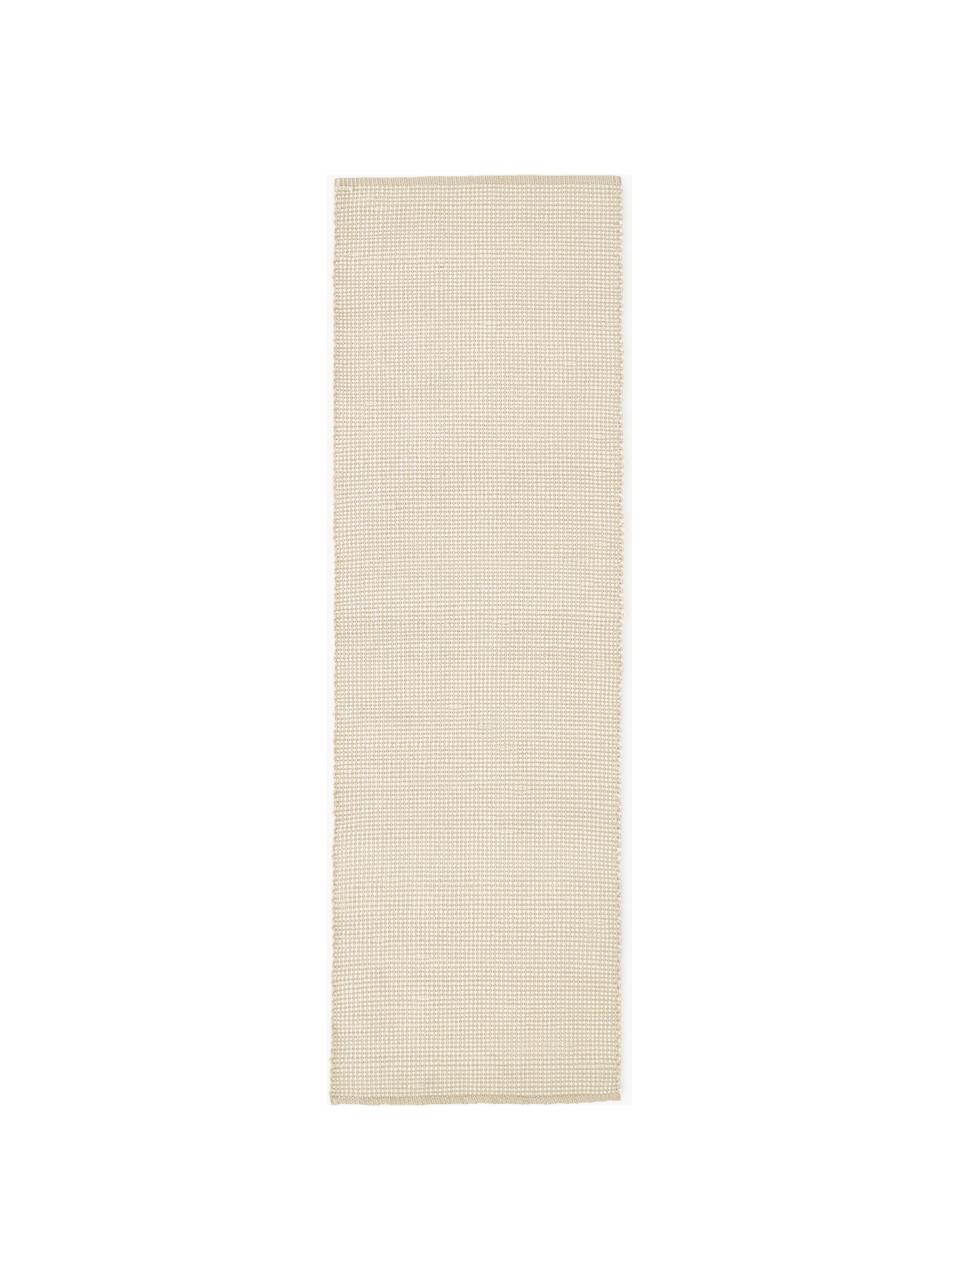 Ručně tkaný vlněný běhoun Amaro, Krémově bílá, béžová, Š 80 cm, D 200 cm